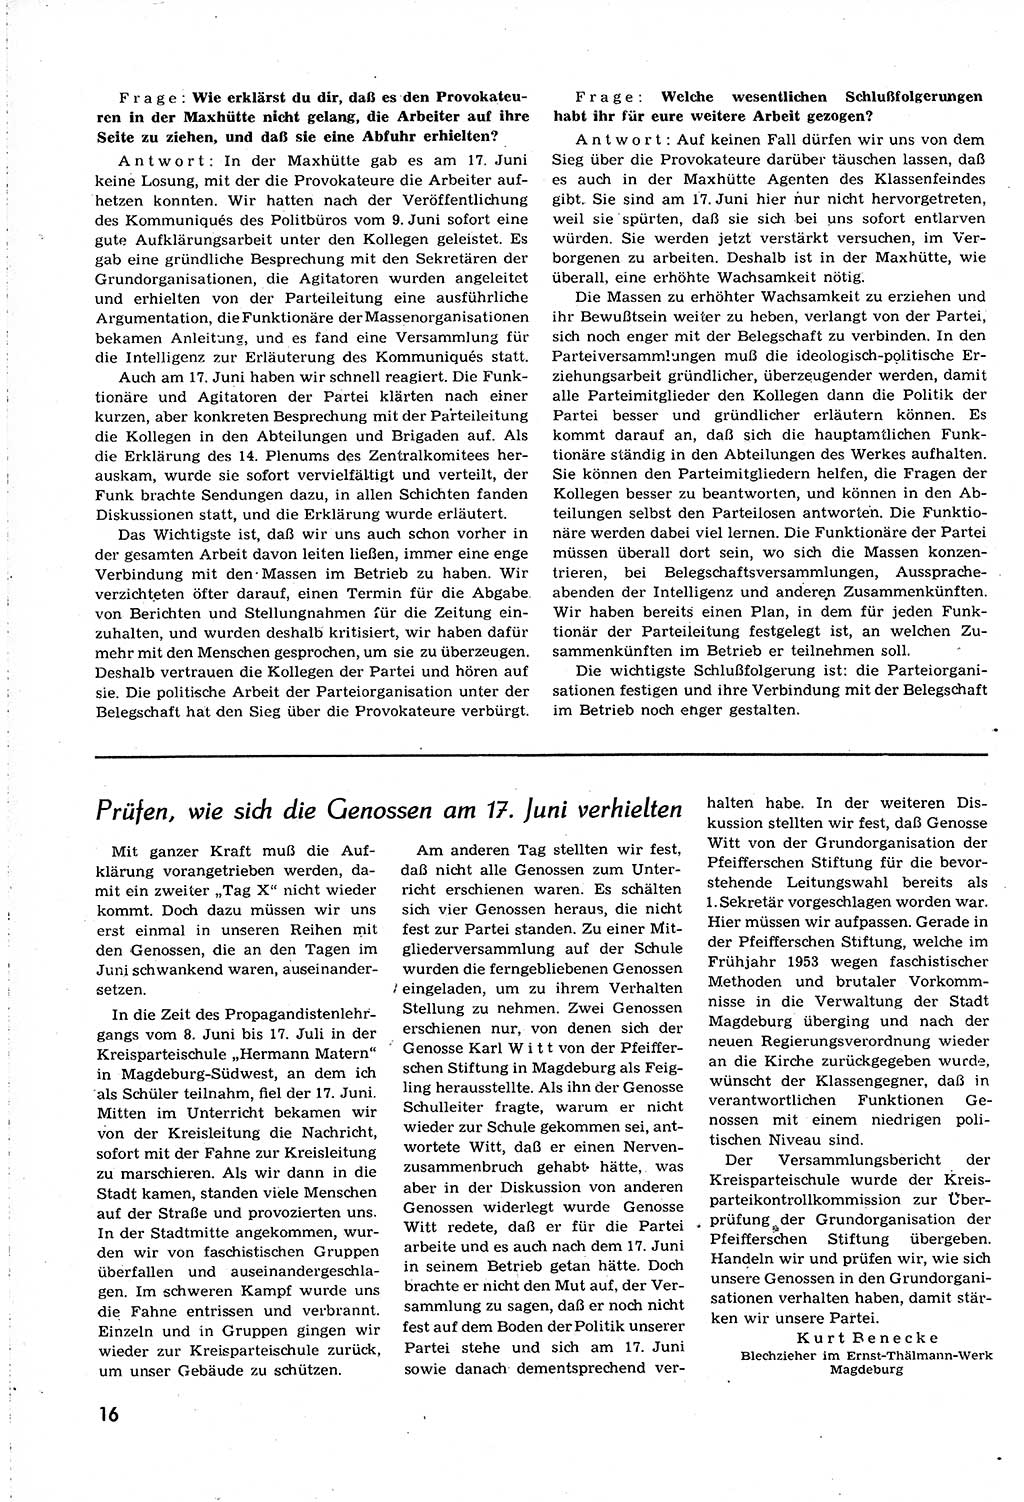 Neuer Weg (NW), Organ des Zentralkomitees (ZK) [Sozialistische Einheitspartei Deutschlands (SED)] für alle Parteiarbeiter, 8. Jahrgang [Deutsche Demokratische Republik (DDR)] 1953, Heft 14/16 (NW ZK SED DDR 1953, H. 14/16)